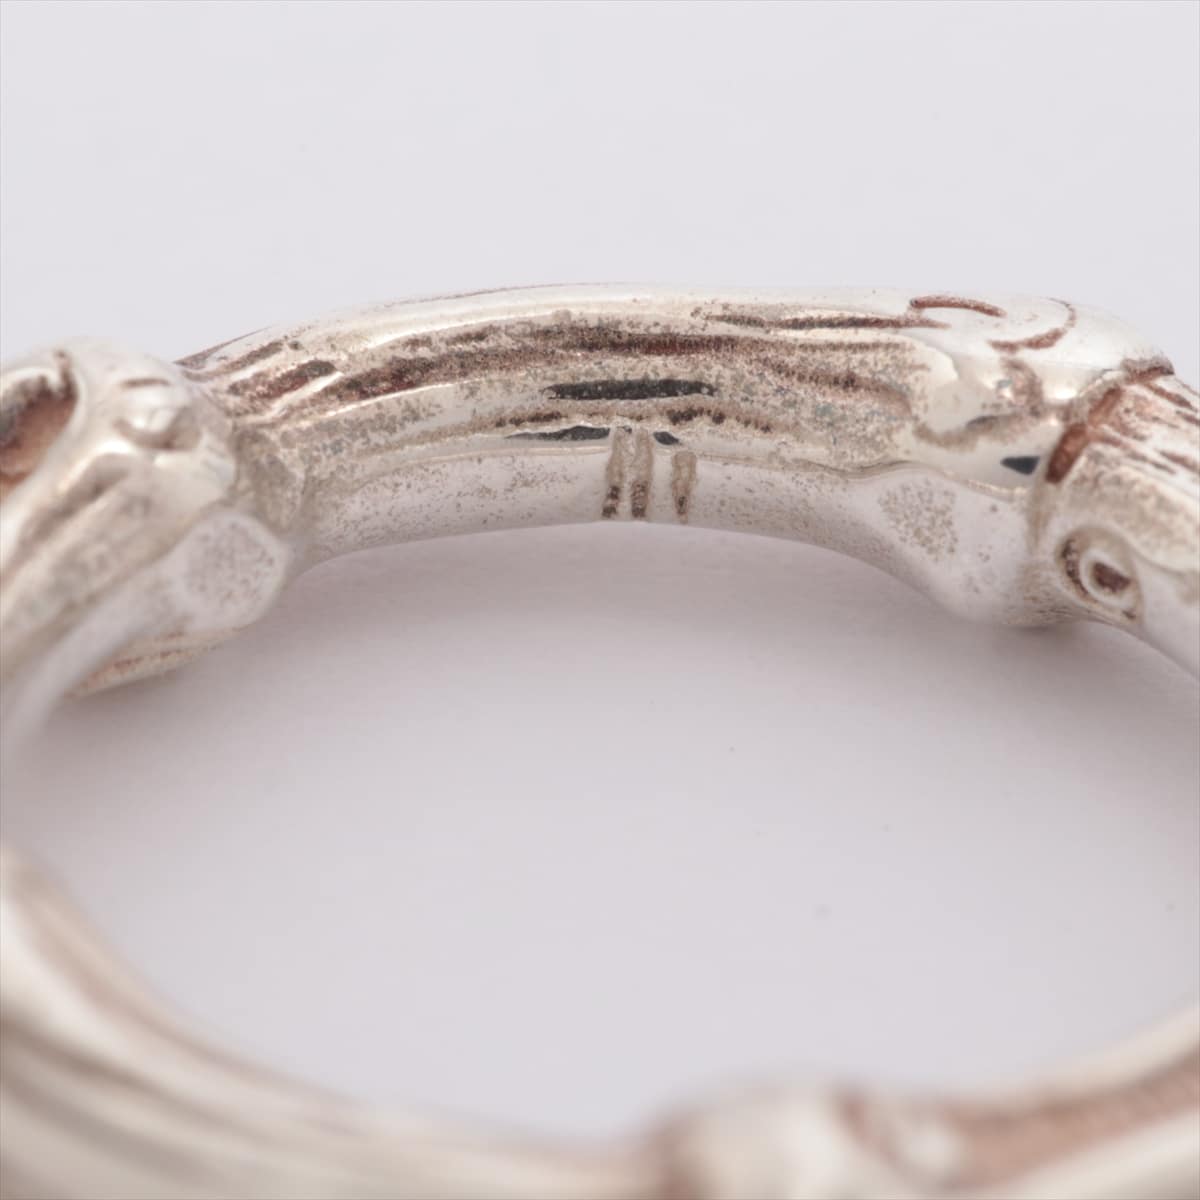 Tiffany Bamboo Keyring 925 5.4g Silver